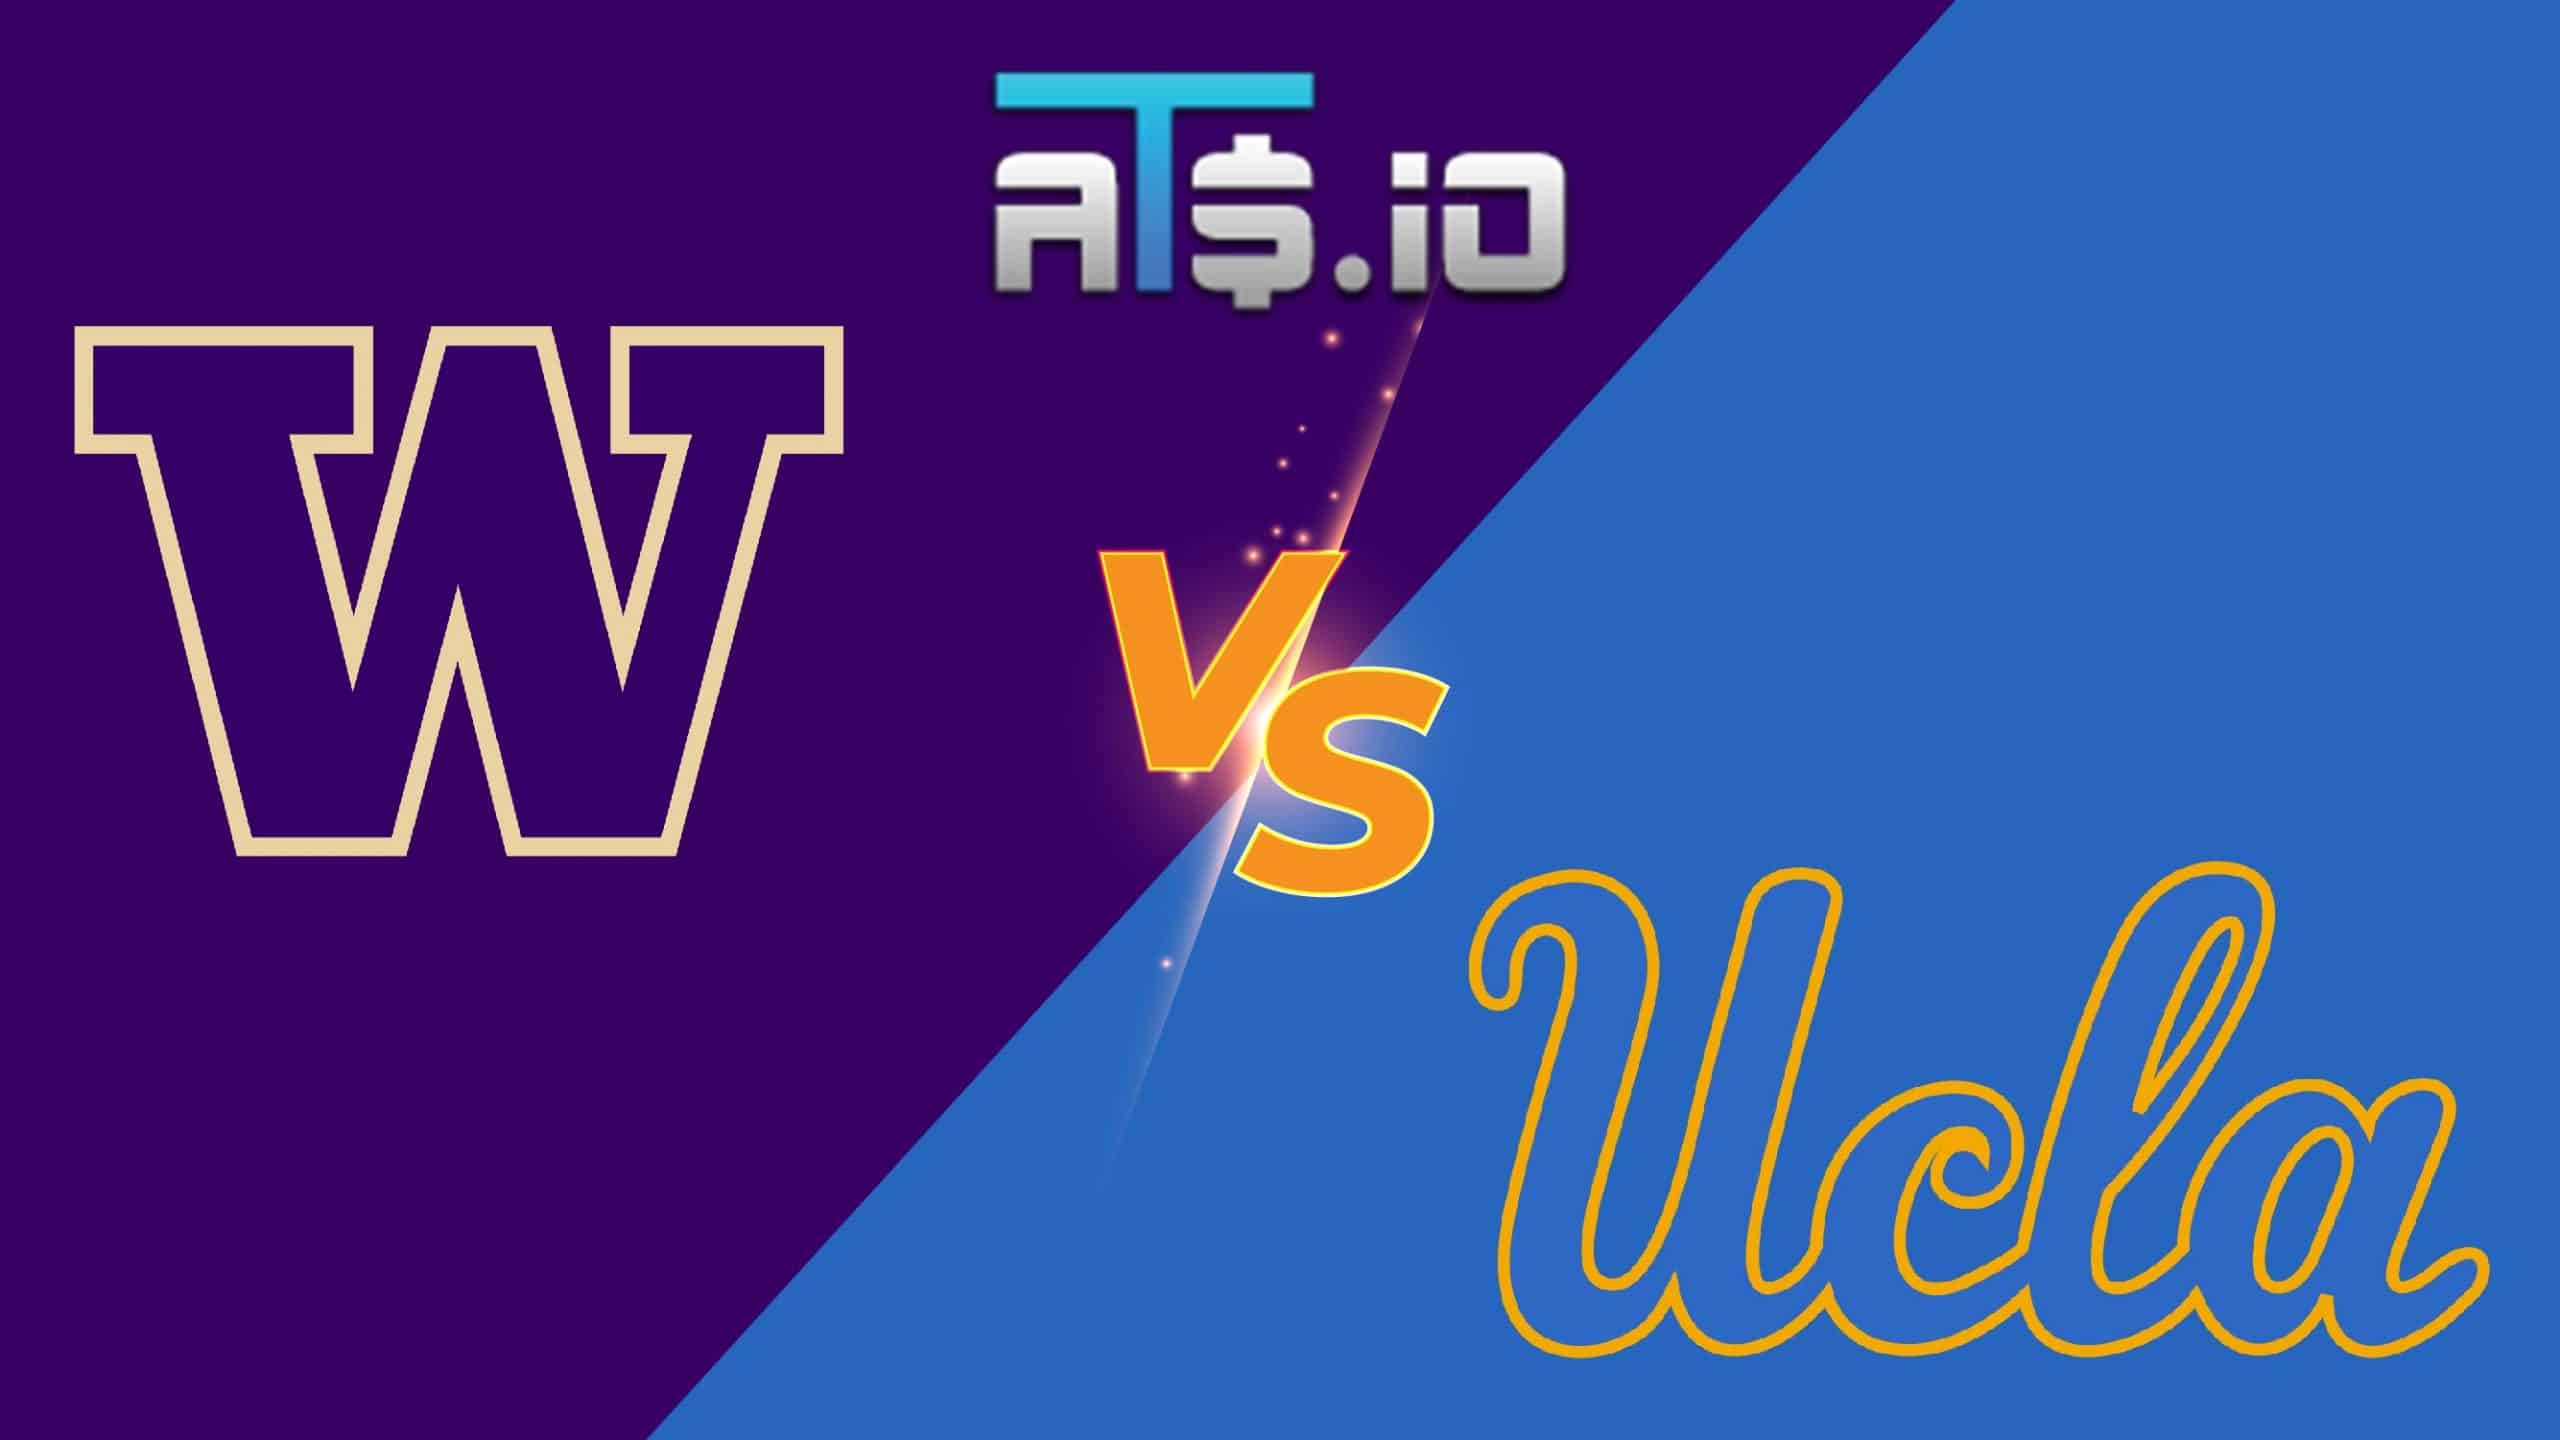 Washington vs UCLA